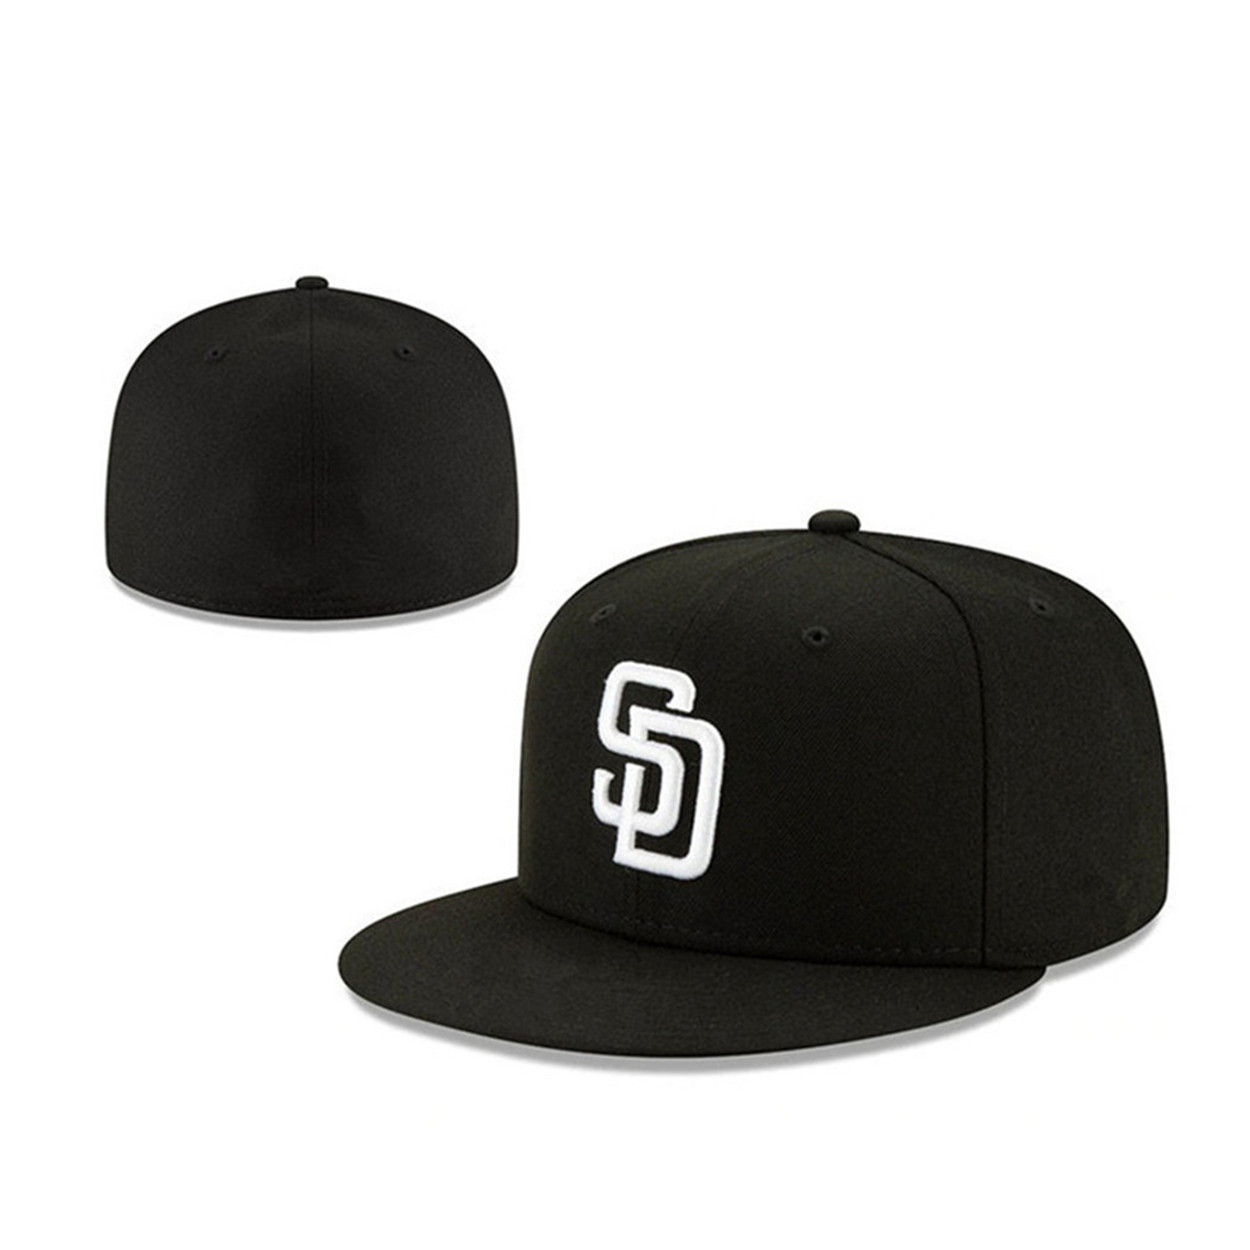 New San Diego Baseball Team Snapback Full fechado Caps Summer como sd letra gorras bones homens homens homens casuais esporte esportivo plano chapé chapéu chapau A-7